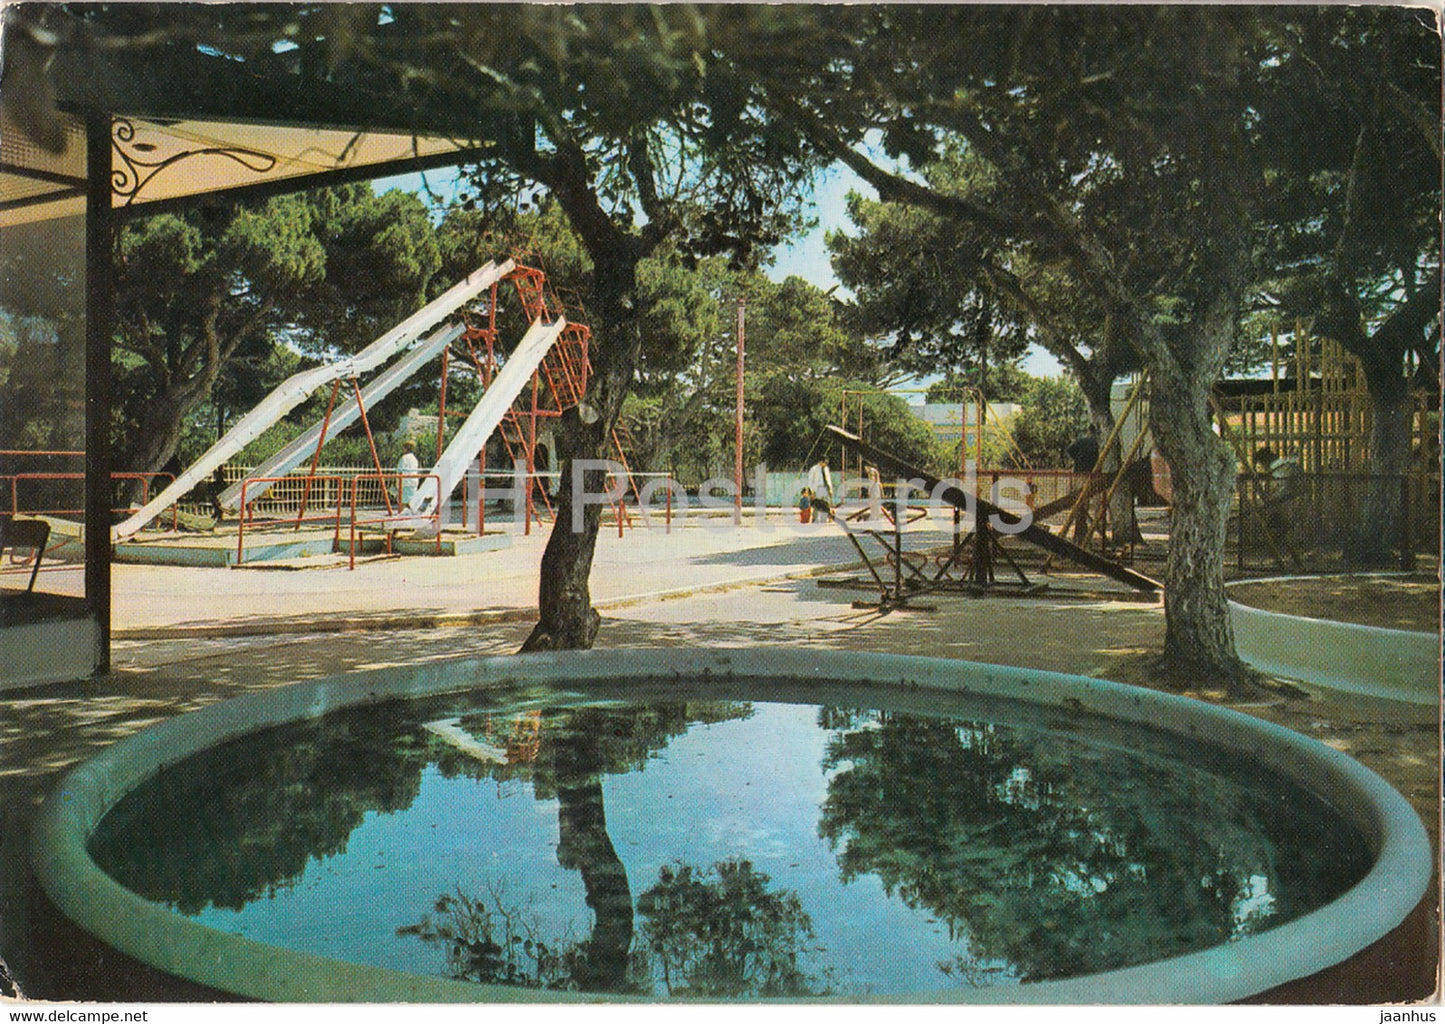 Oran - Canastel - Parc d'enfants - Children's Park - Algeria - unused - JH Postcards